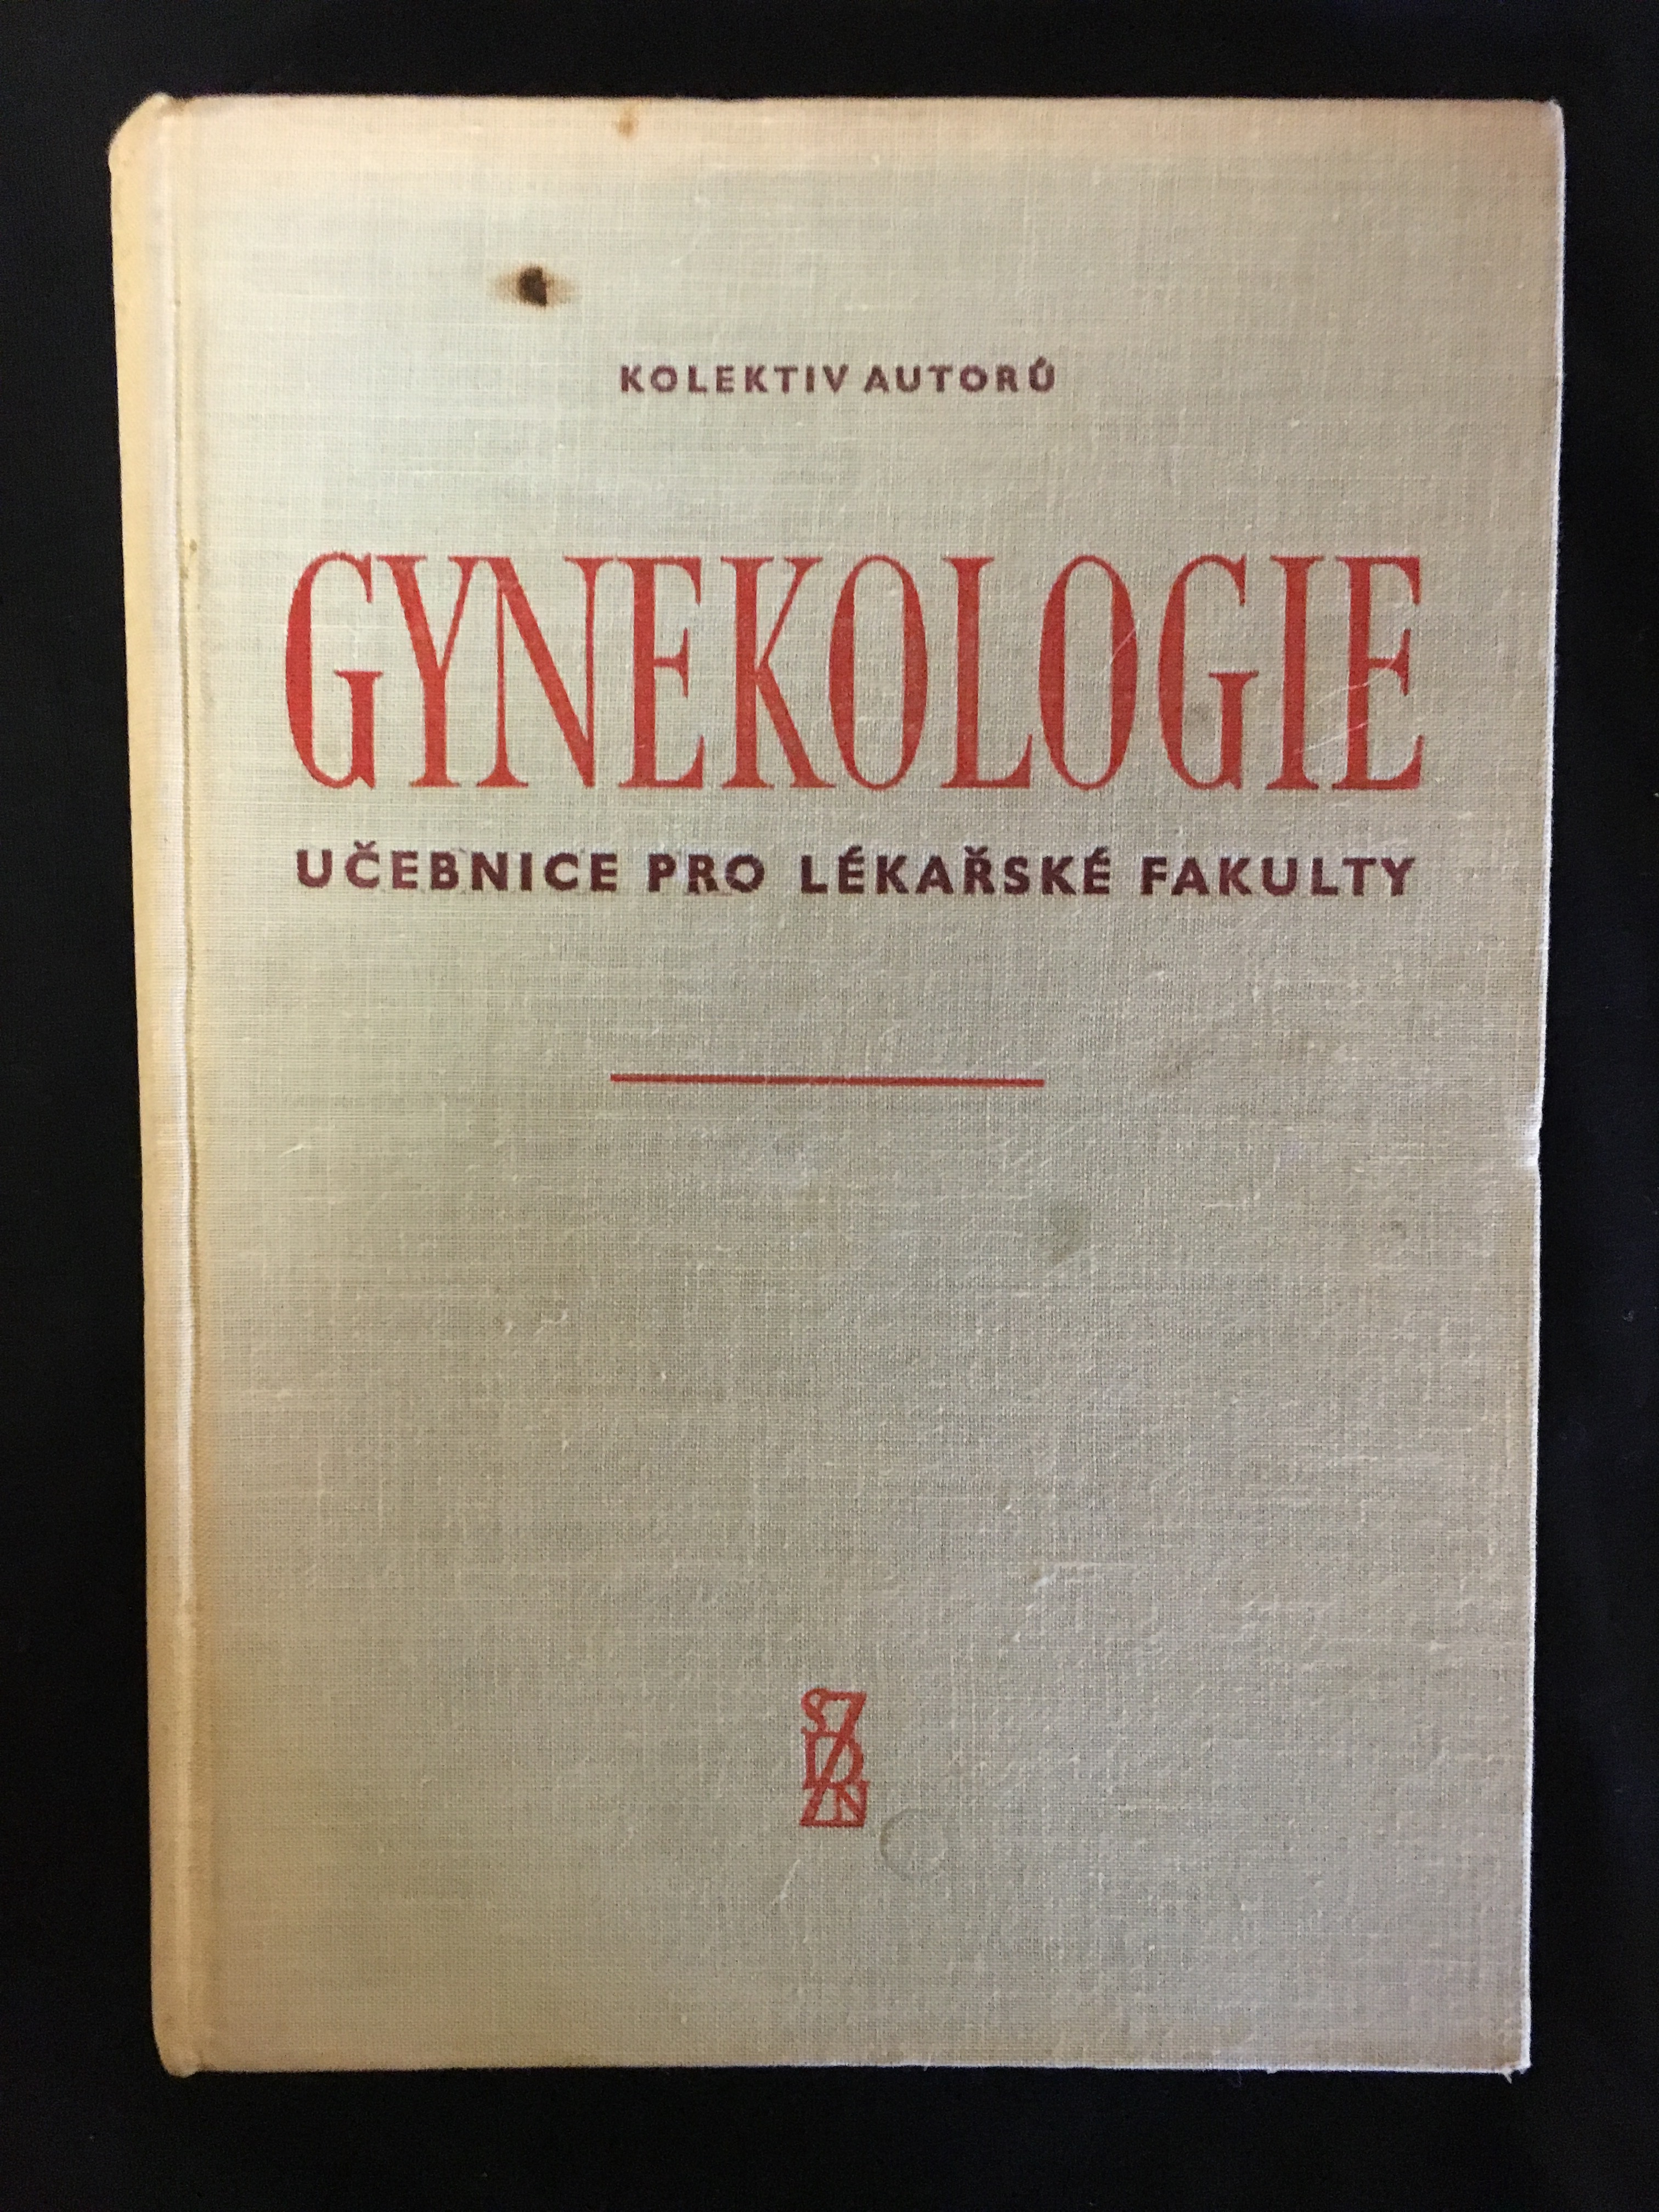 Gynekologie učebnice pro lekářske fakulty